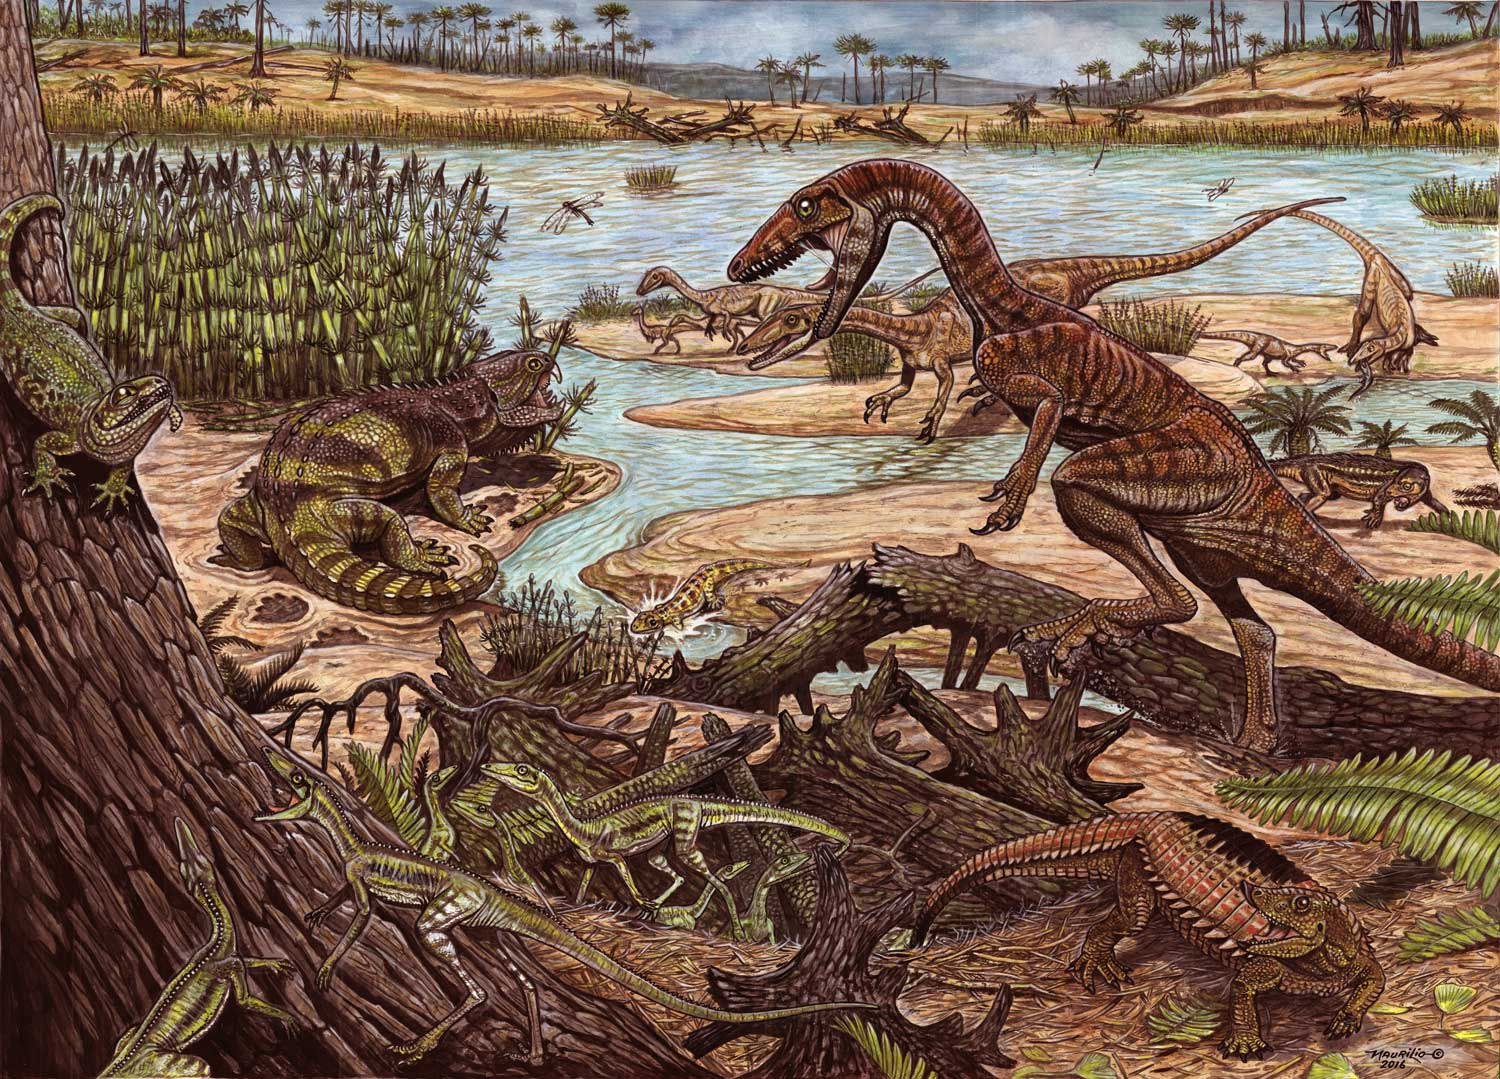 Предки людей жили на земле. Динозавры Триасового периода. Меловой период мезозойской эры. Первые динозавры Триасового периода. Триасовый период мезозойской эры рептилии.